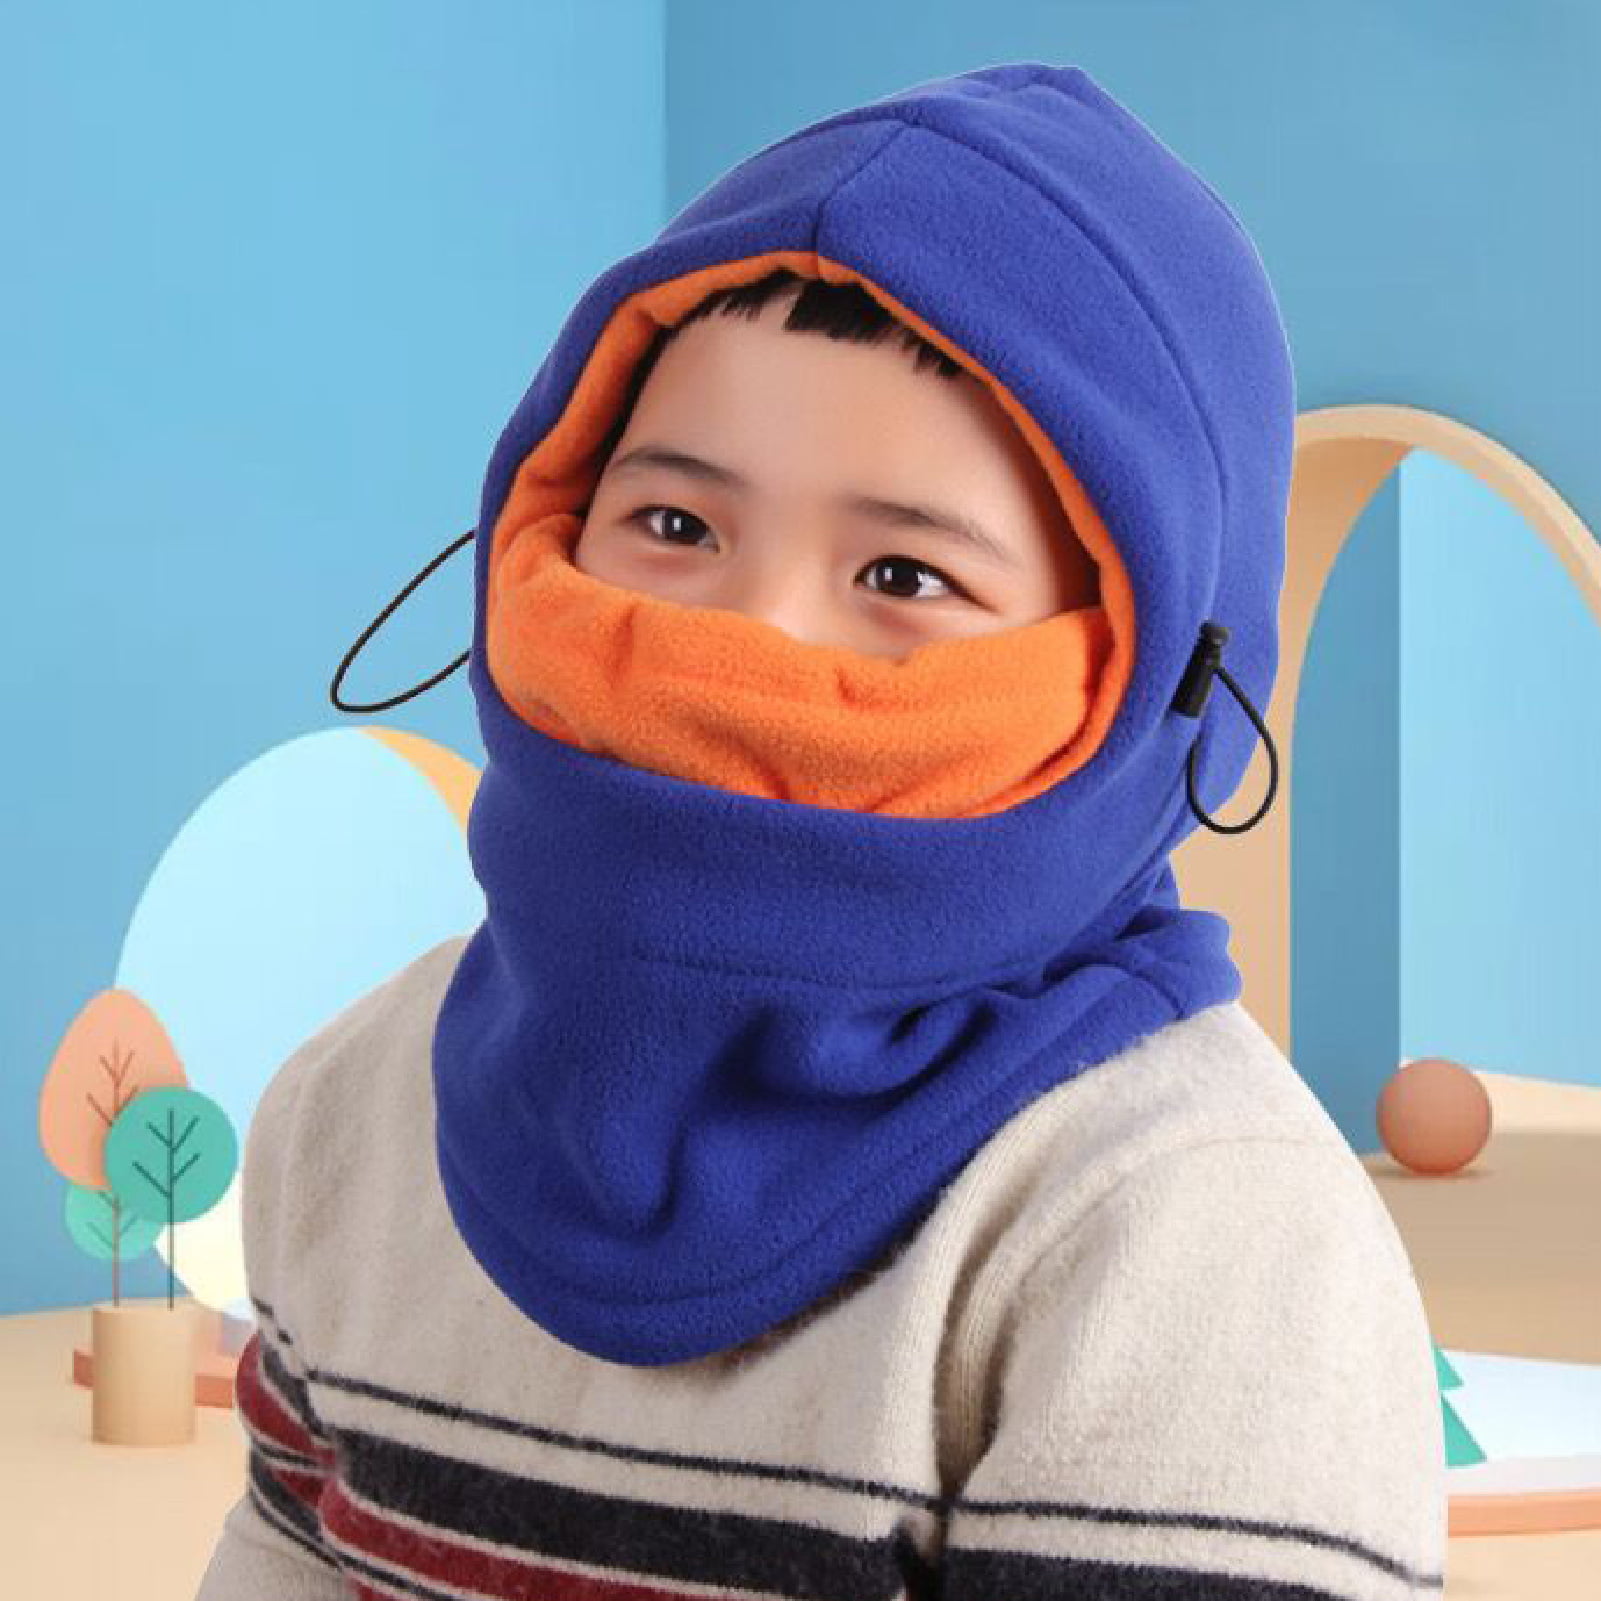 TRIWONDER Kids Balaclava Face Mask Fleece Ski Mask Neck Warmer